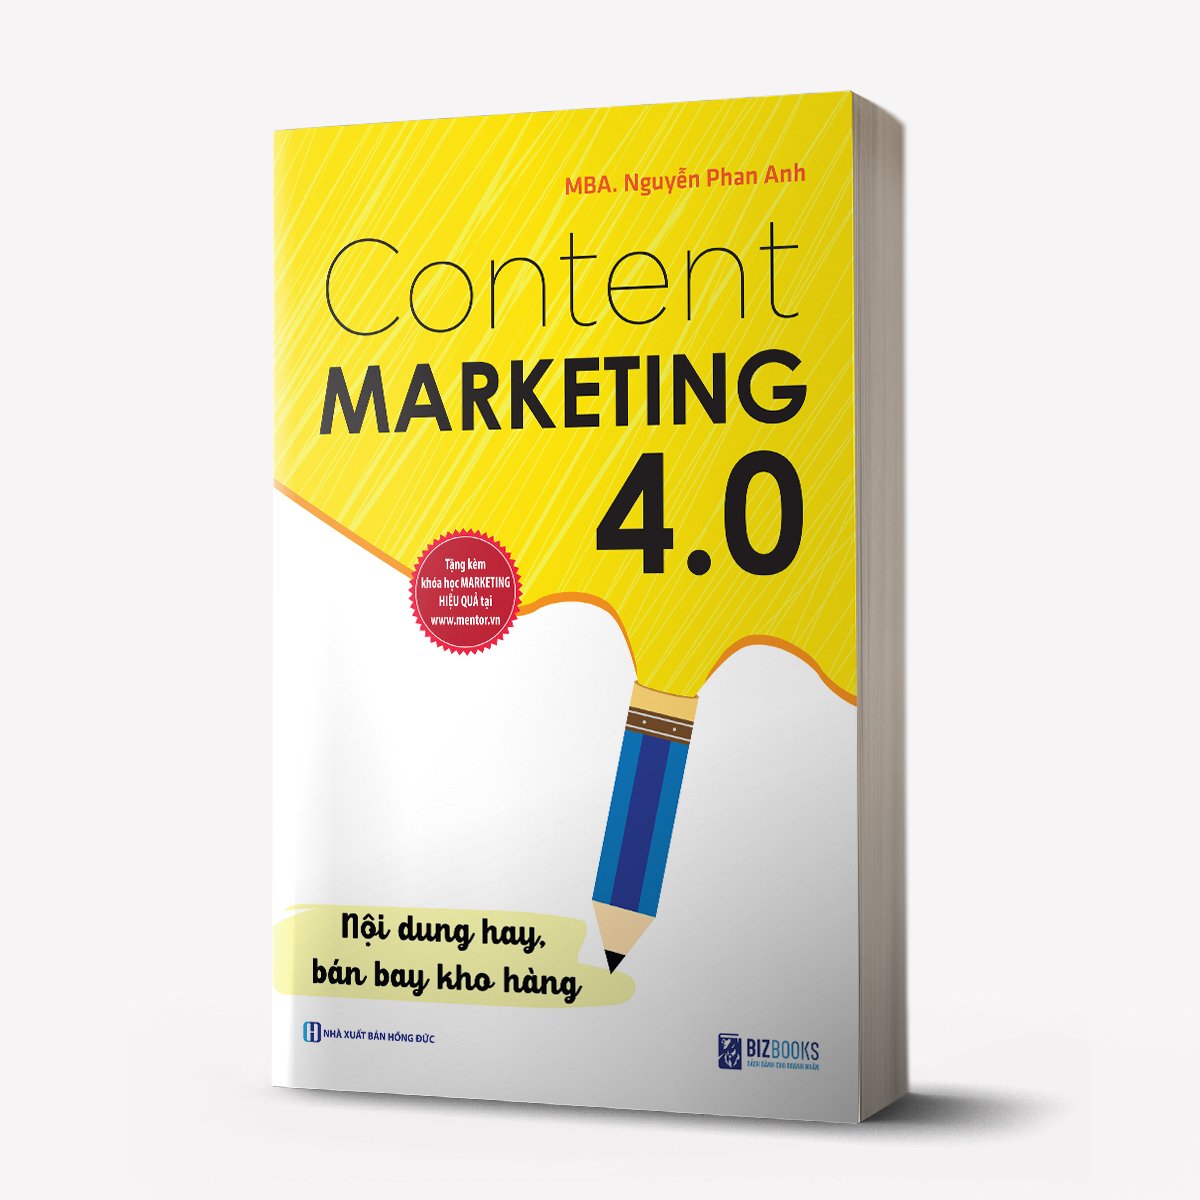 Content Marketing 4.0: Nội dung hay, bán bay kho hàng (Tặng kèm khóa học online)